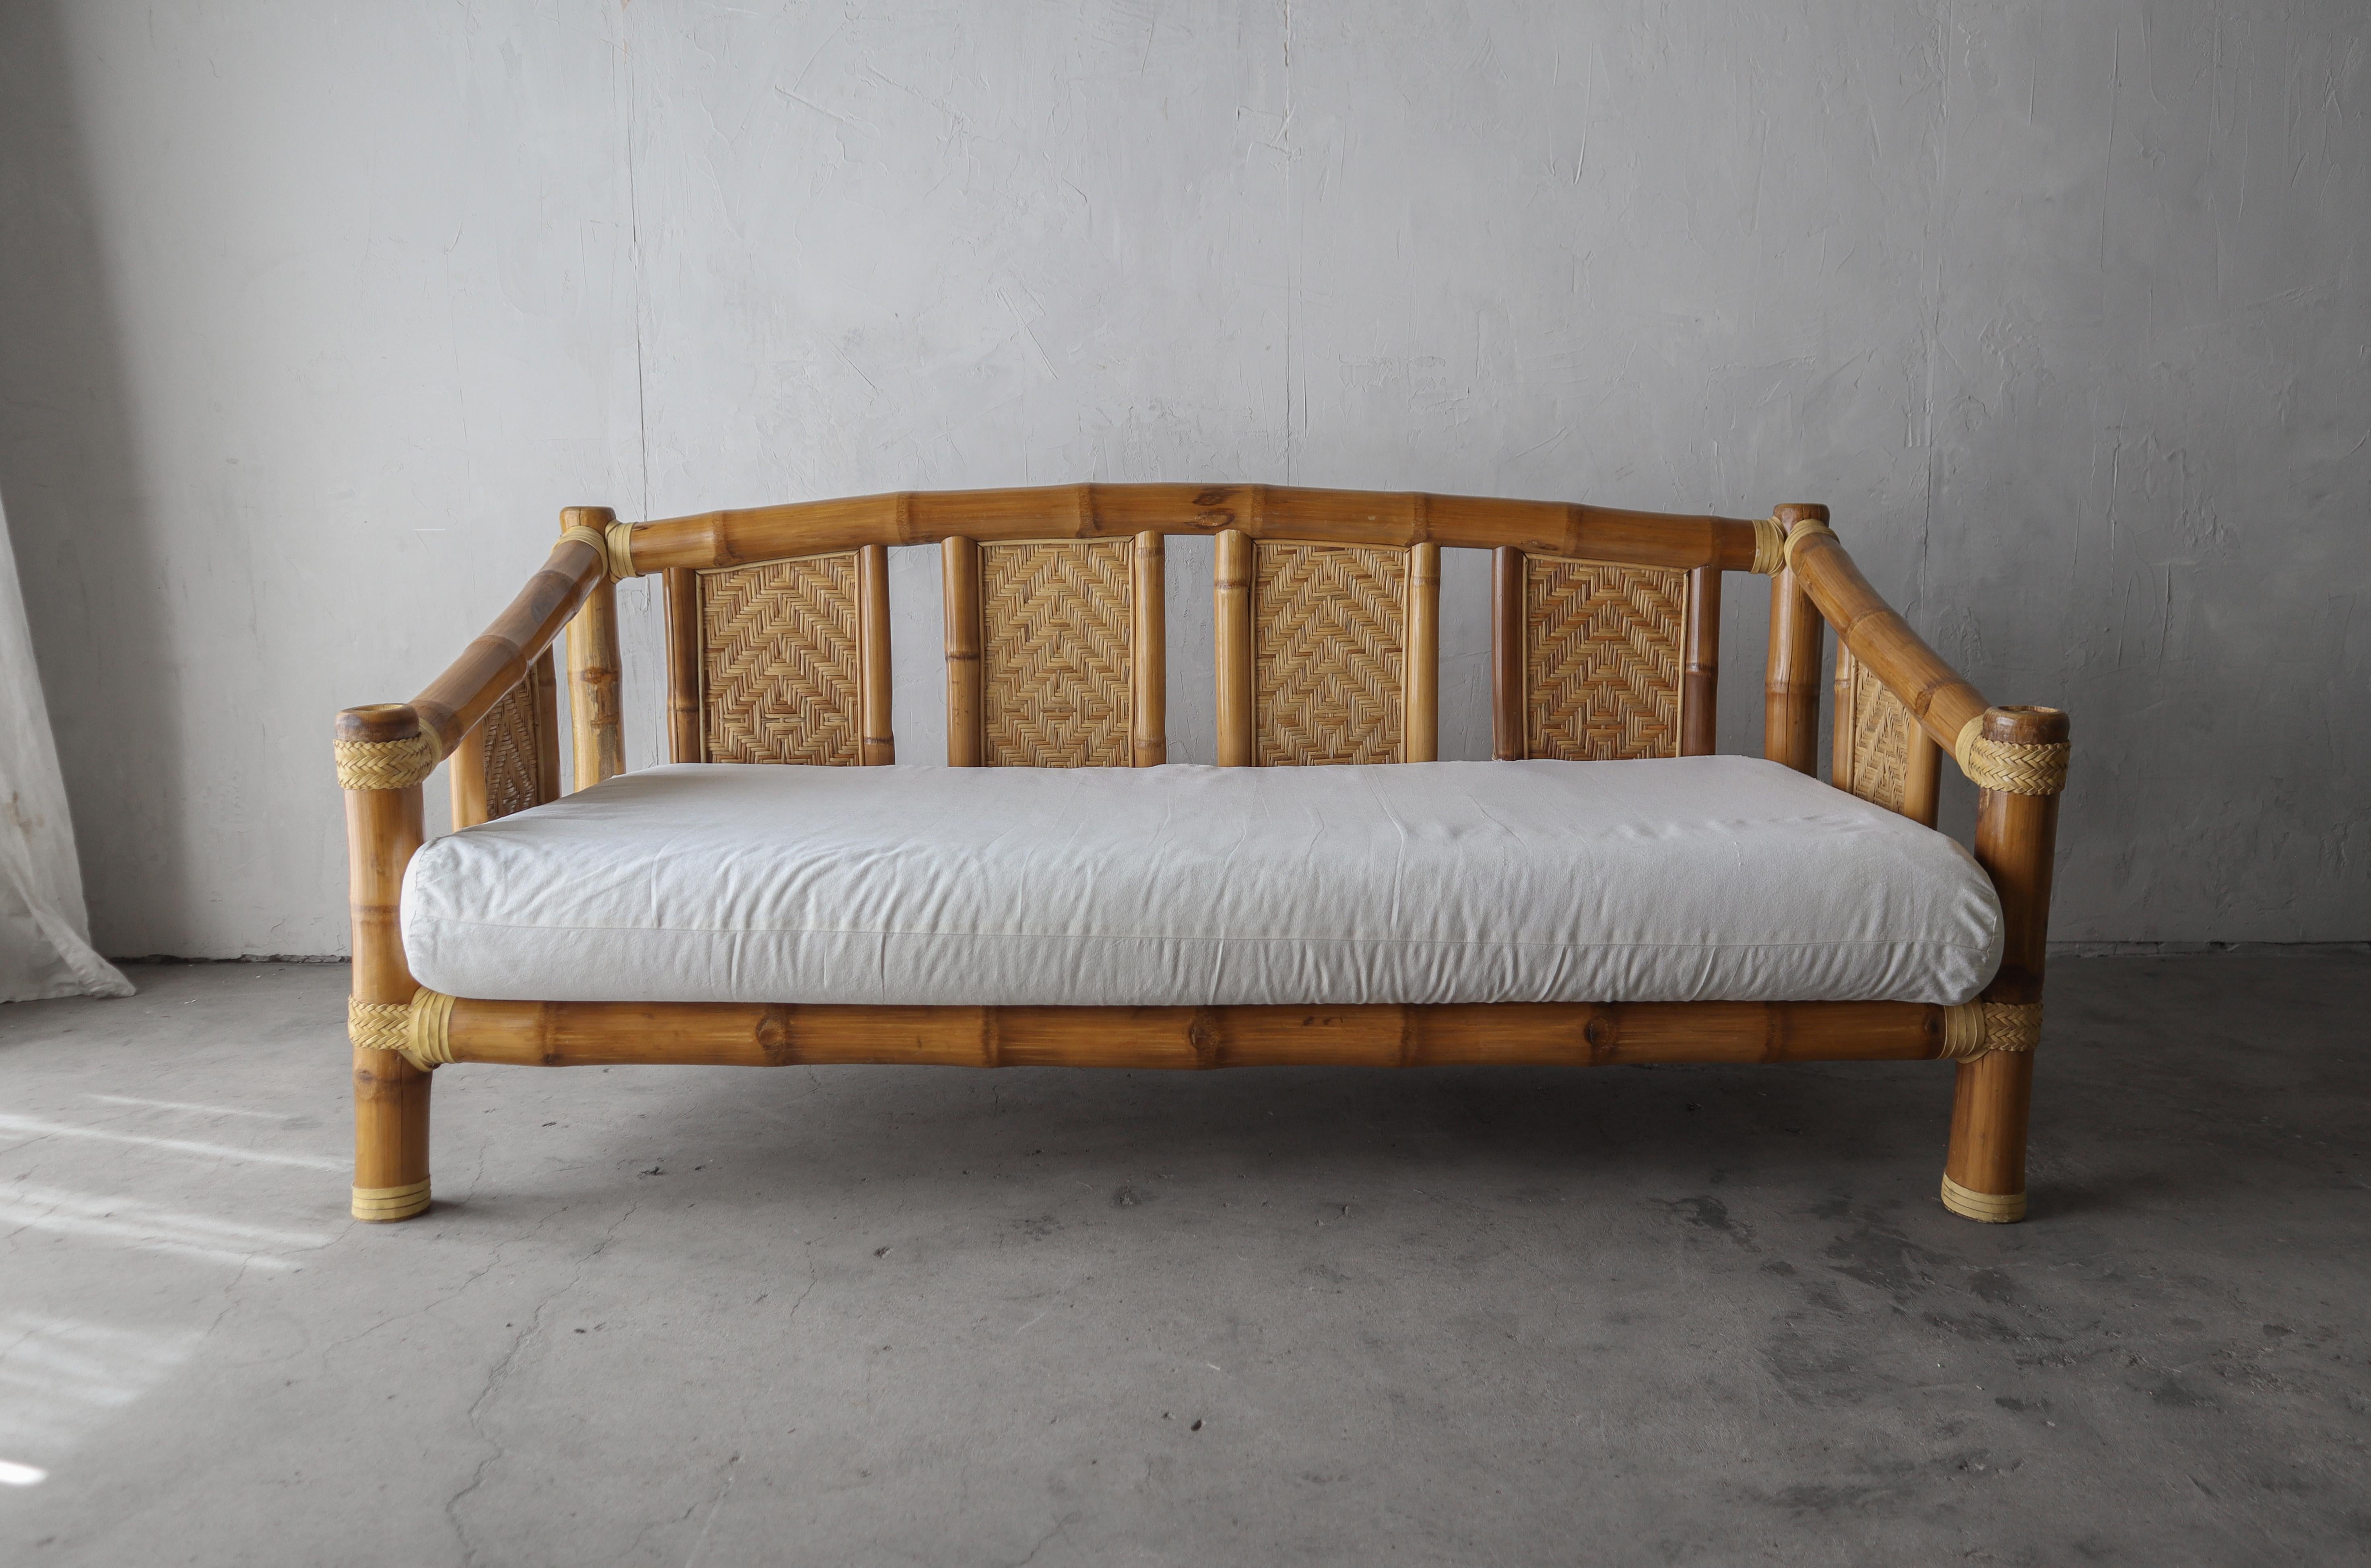 Quelle pièce unique et spéciale ! Le bambou surdimensionné fait vraiment de ce canapé-lit vintage massif une pièce super cool et artistique. Si vous êtes à la recherche d'une véritable pièce d'apparat, ne cherchez plus.

Le bambou est en excellent